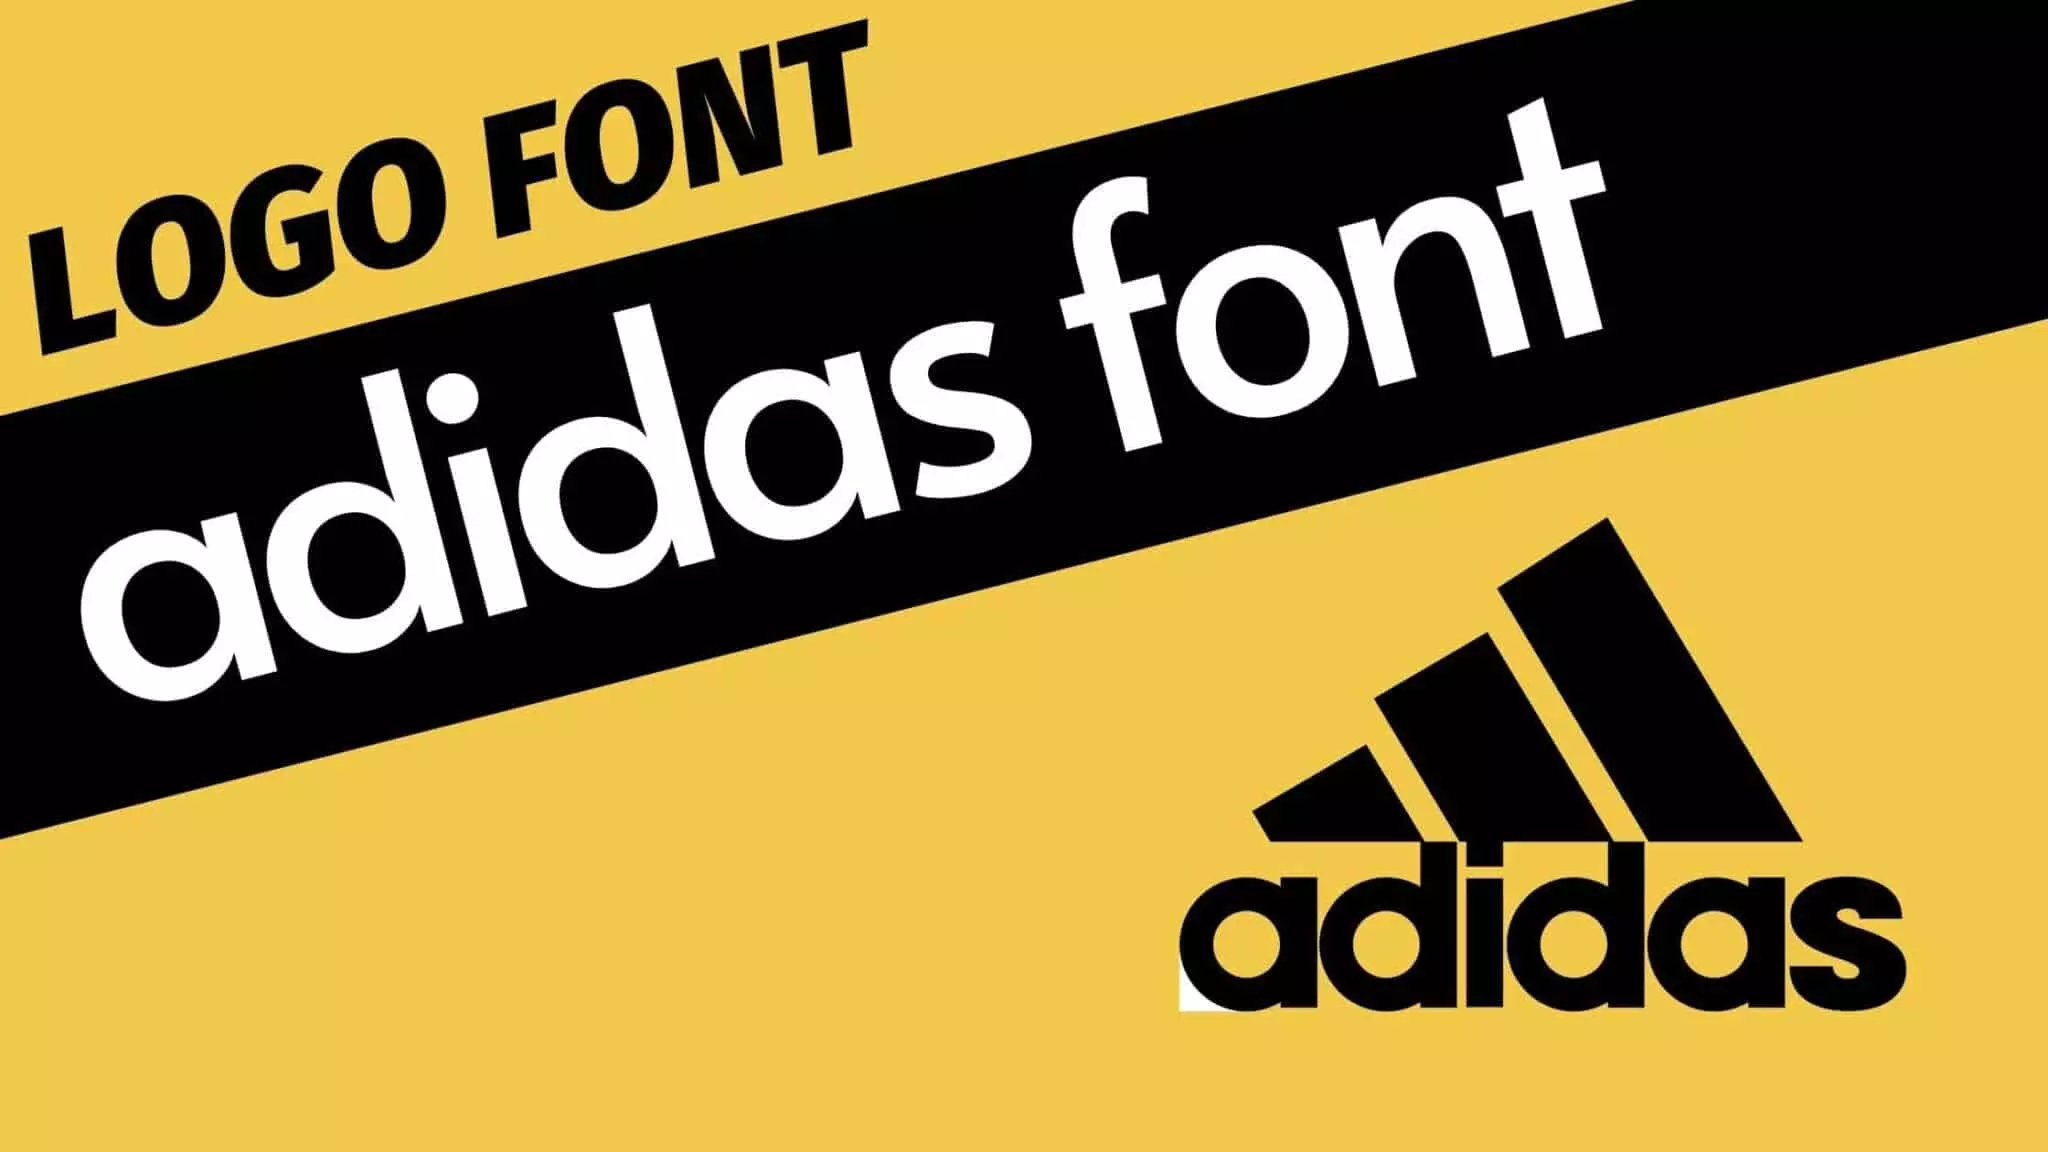 Adidas Font and adidas logo